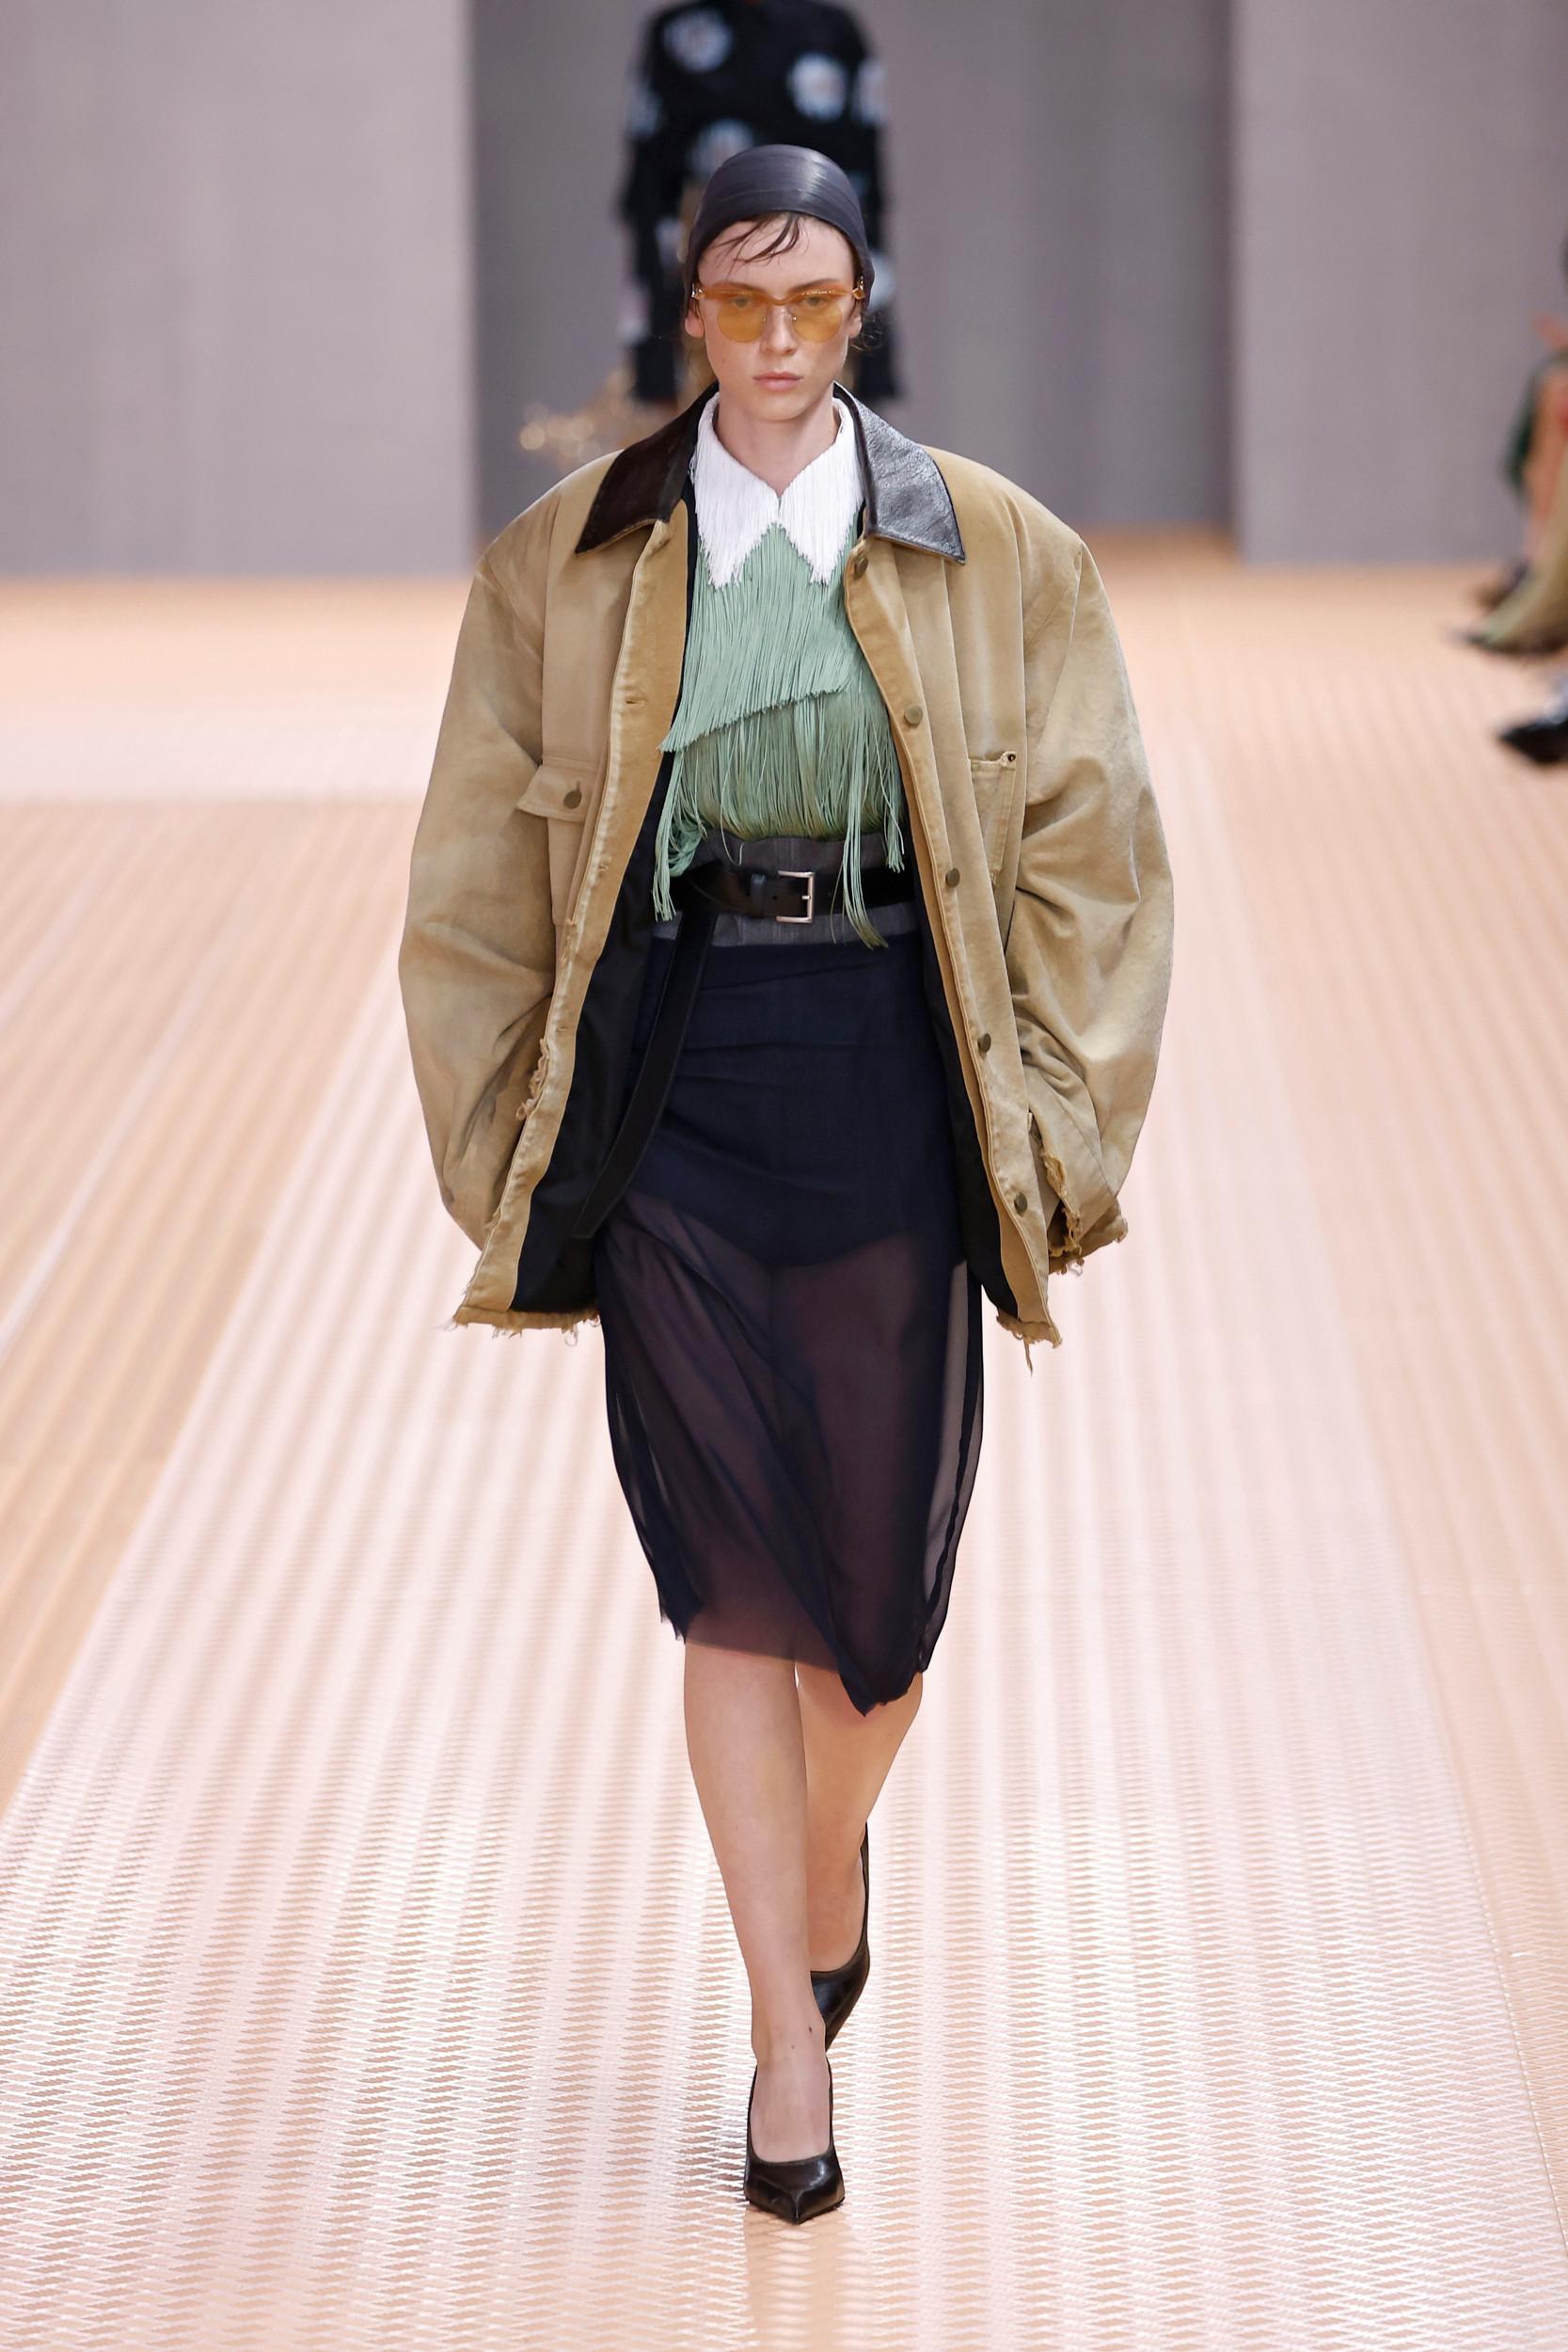 De ‘barn jacket’: dankzij Prada is deze jas opeens trending